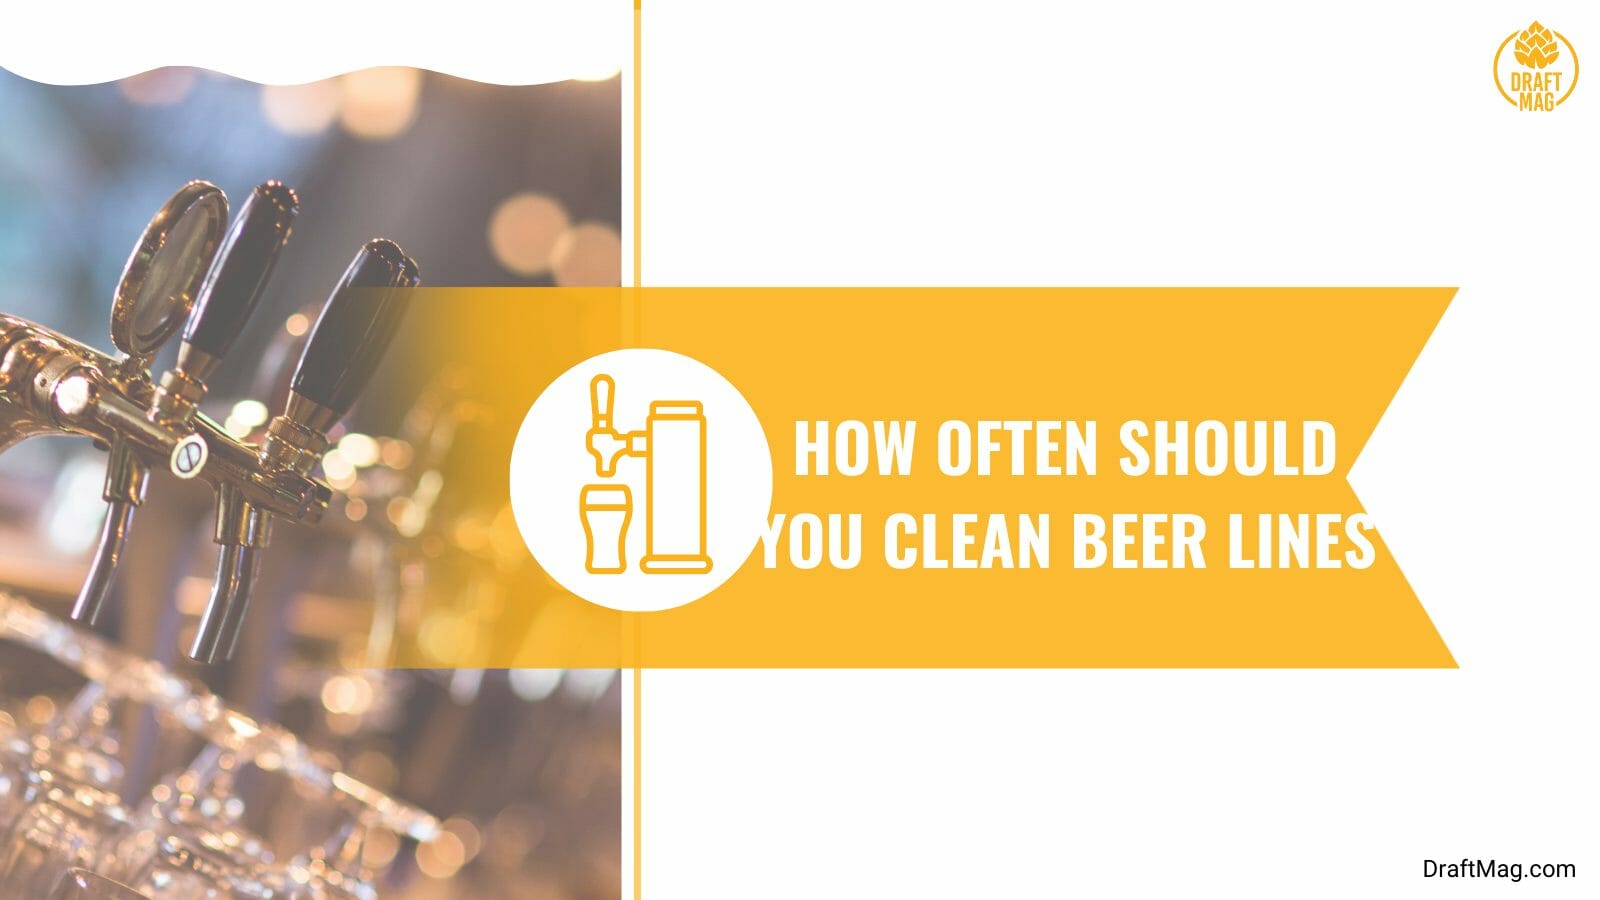 How often to clean beer lines